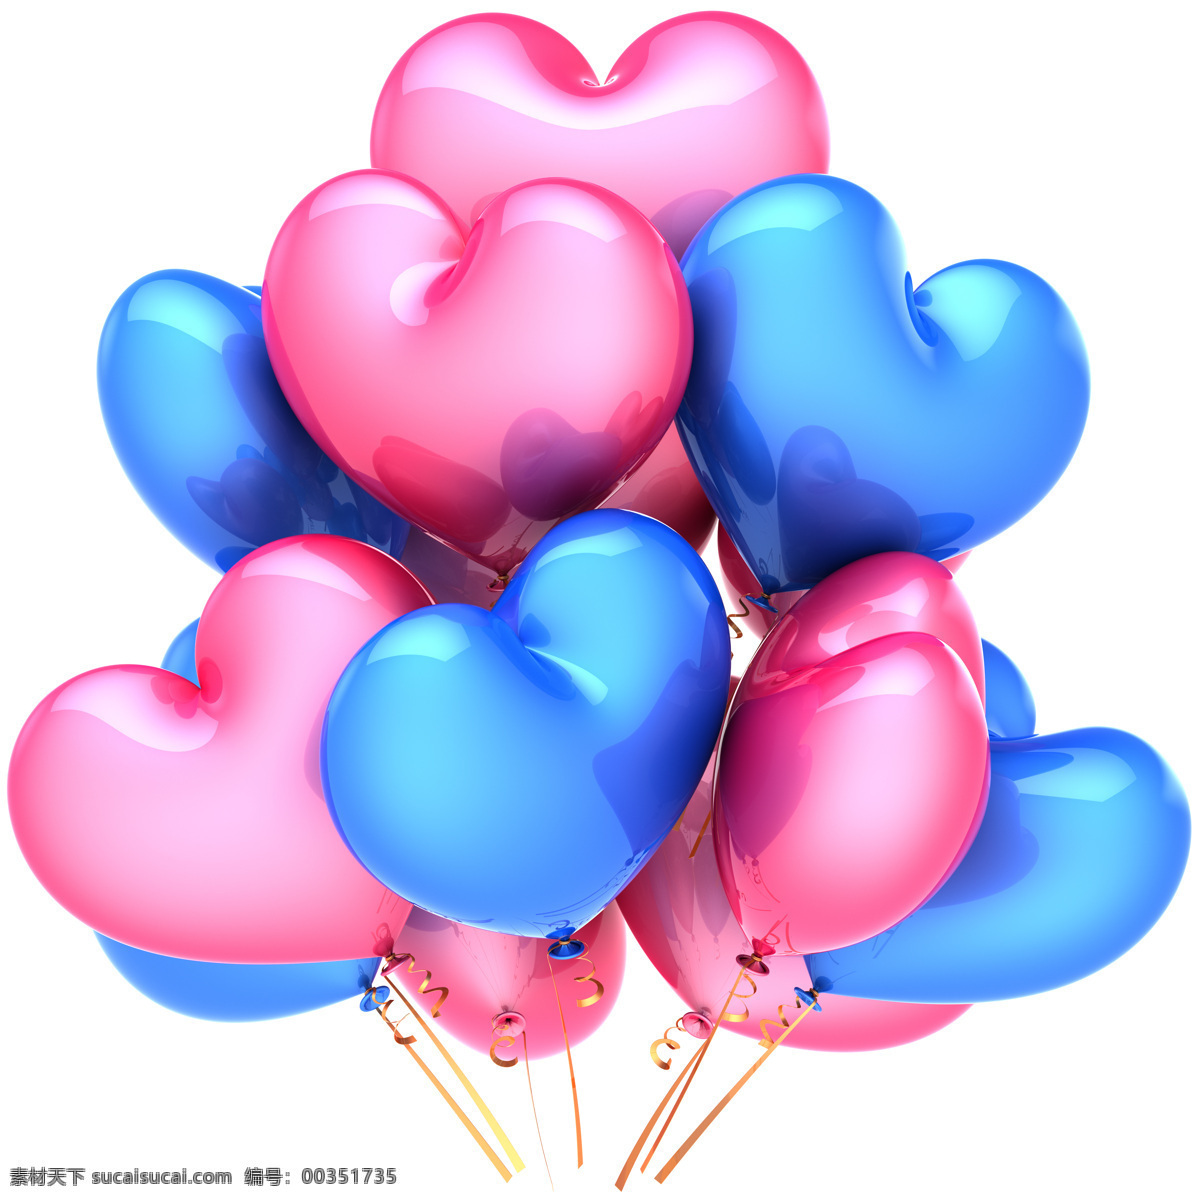 彩色气球背景 气球 立体背景 情人节 节日素材 浪漫节日 底纹背景 其他类别 生活百科 白色